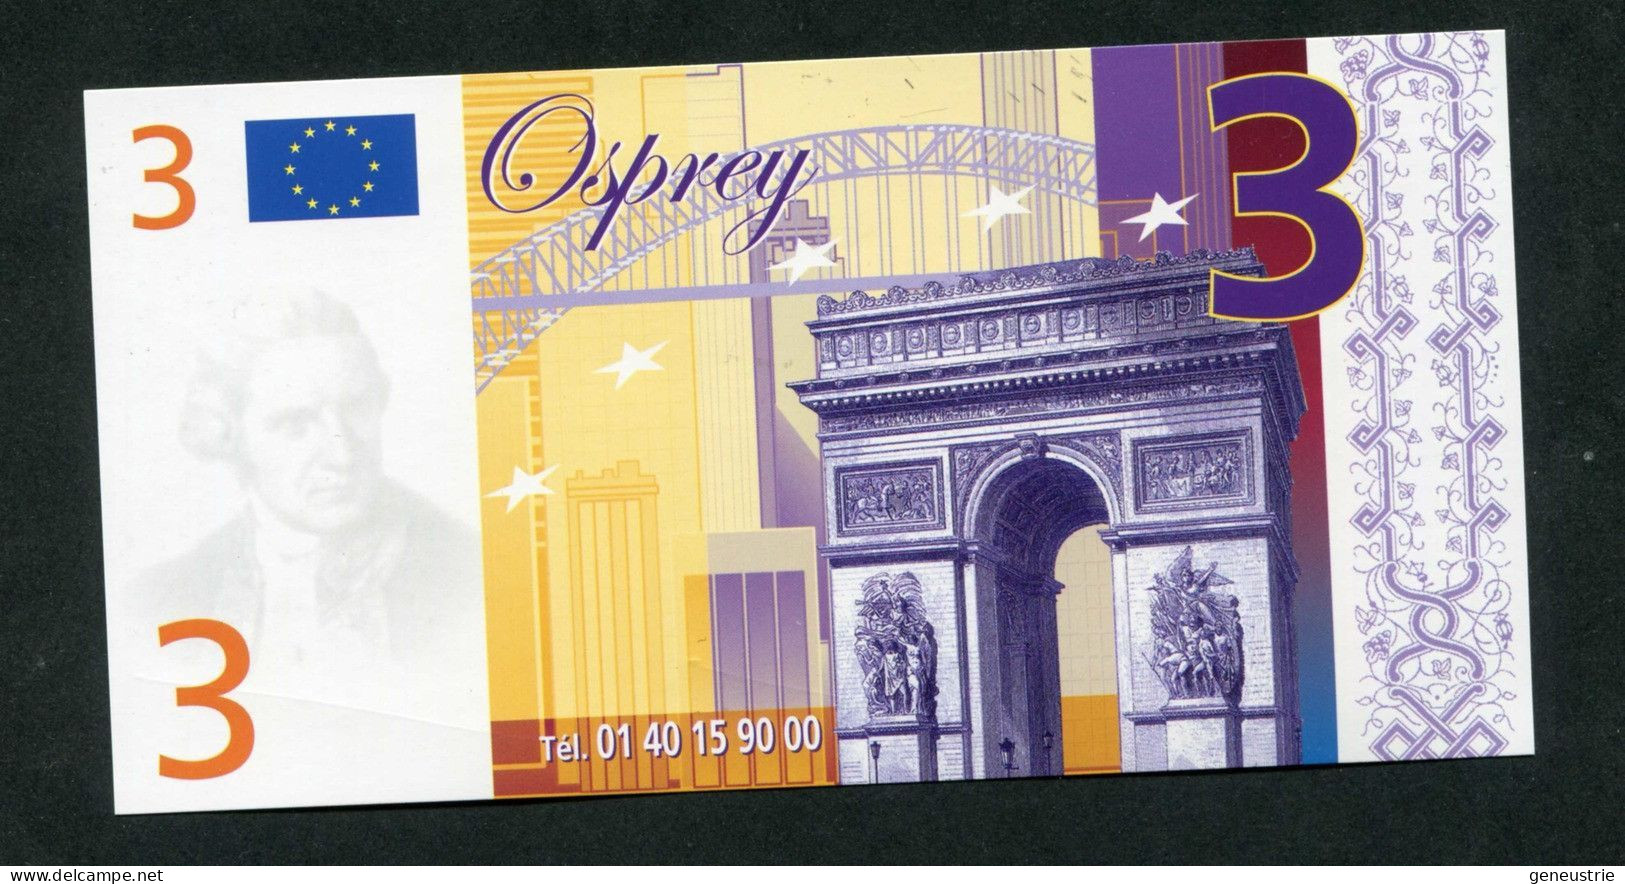 Billet Fantaisie De 3 (euro) "Osprey, Bijoutier à Paris Et Versailles" Billet Publicitaire De 3€ - Ficción & Especímenes